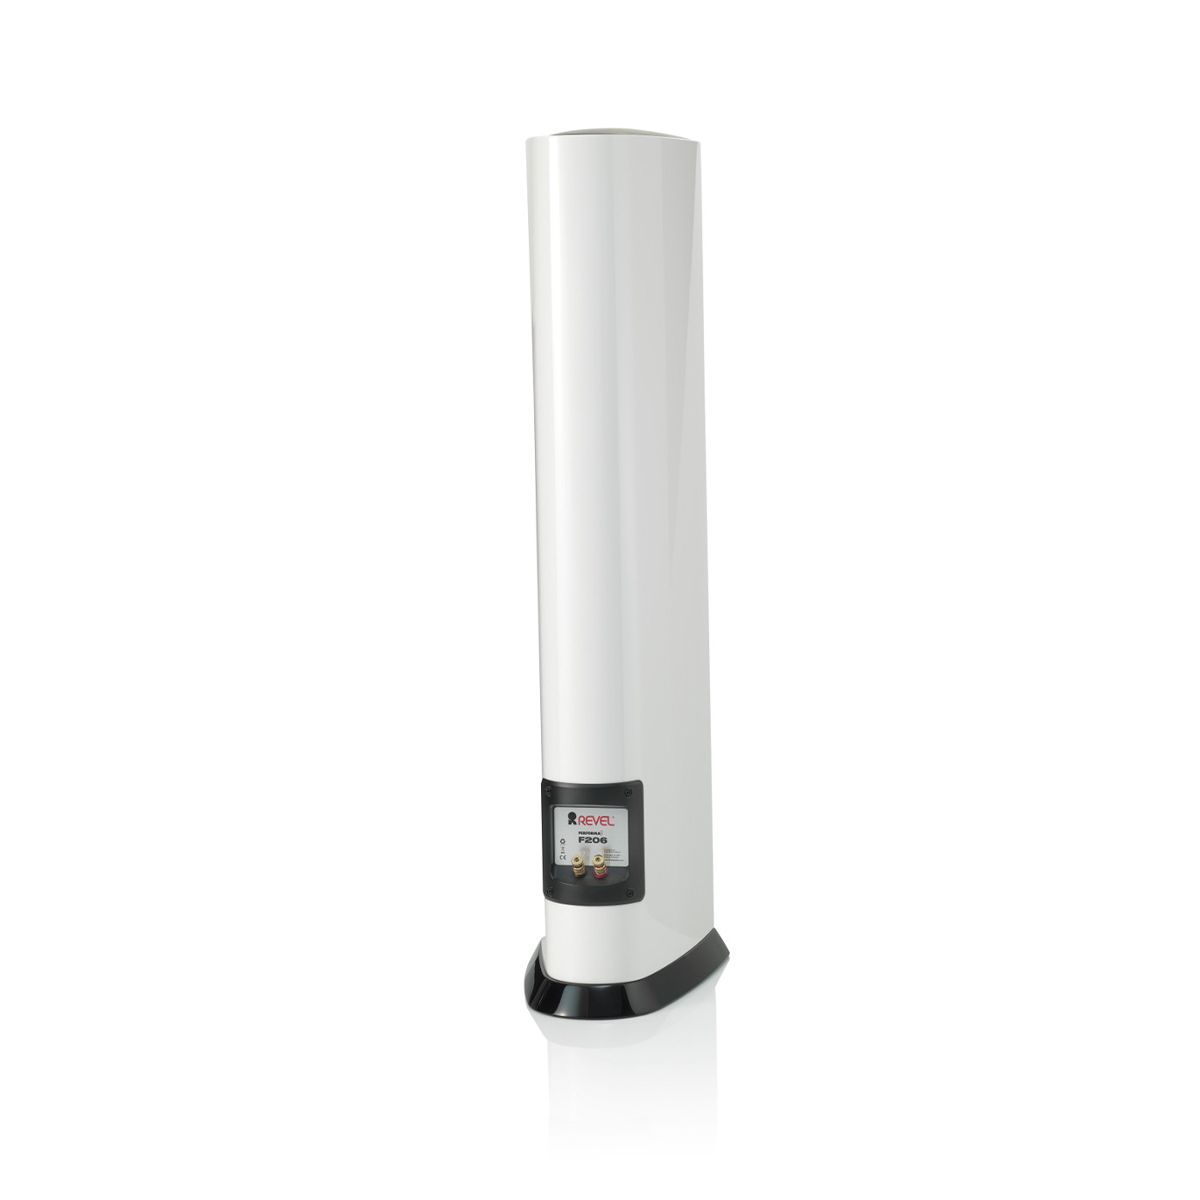 Revel F206 3-Way Floorstanding Tower Loudspeaker - White single - angled rear view